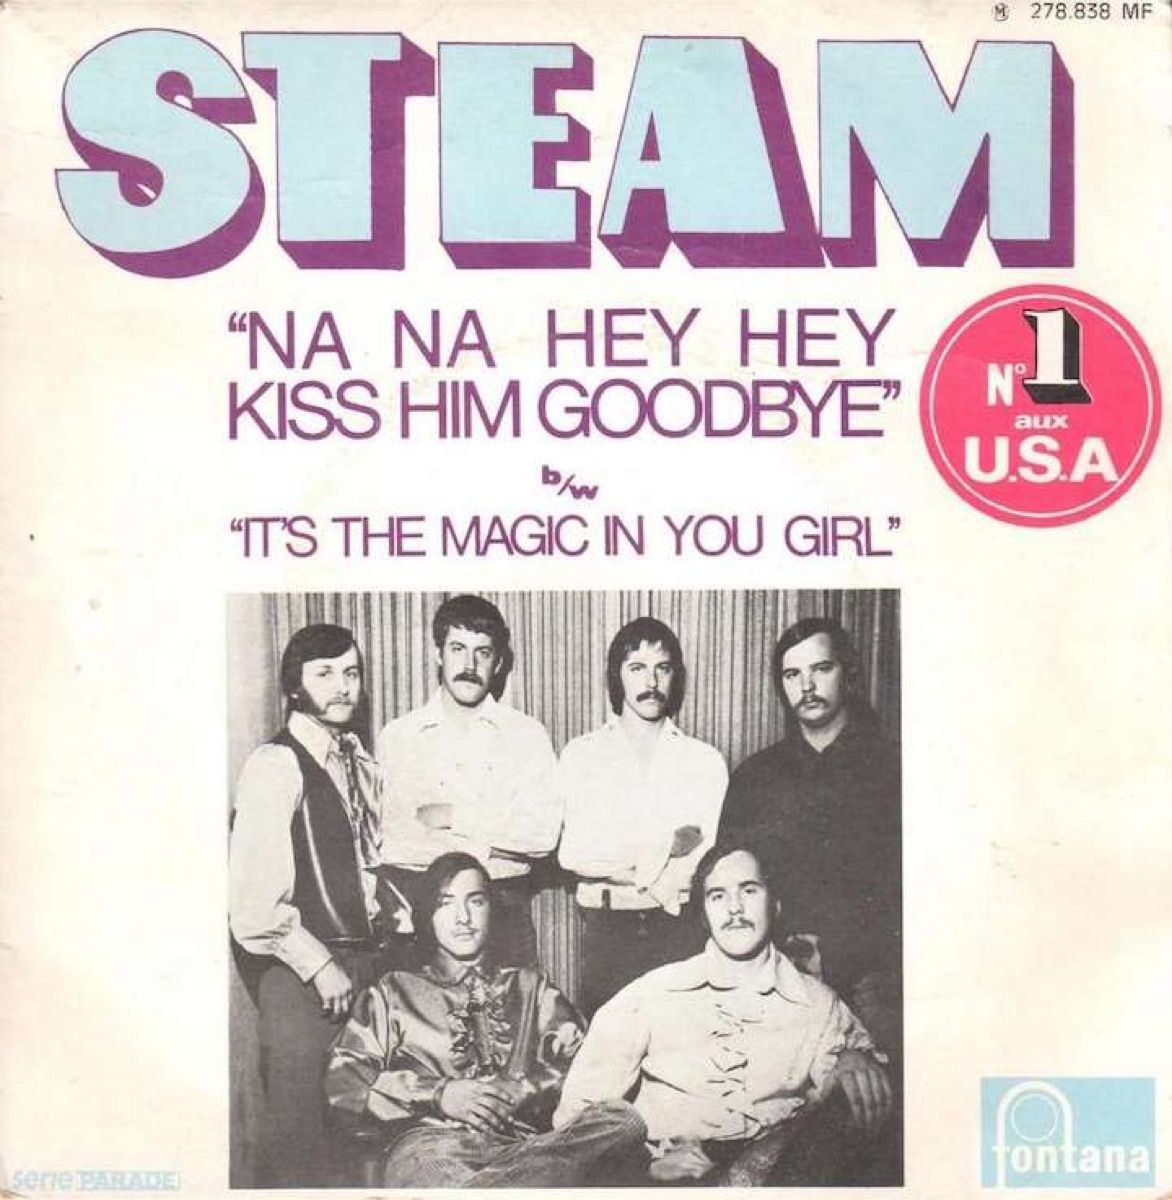 na na hei hei kiss kiss goodbye, steam levy